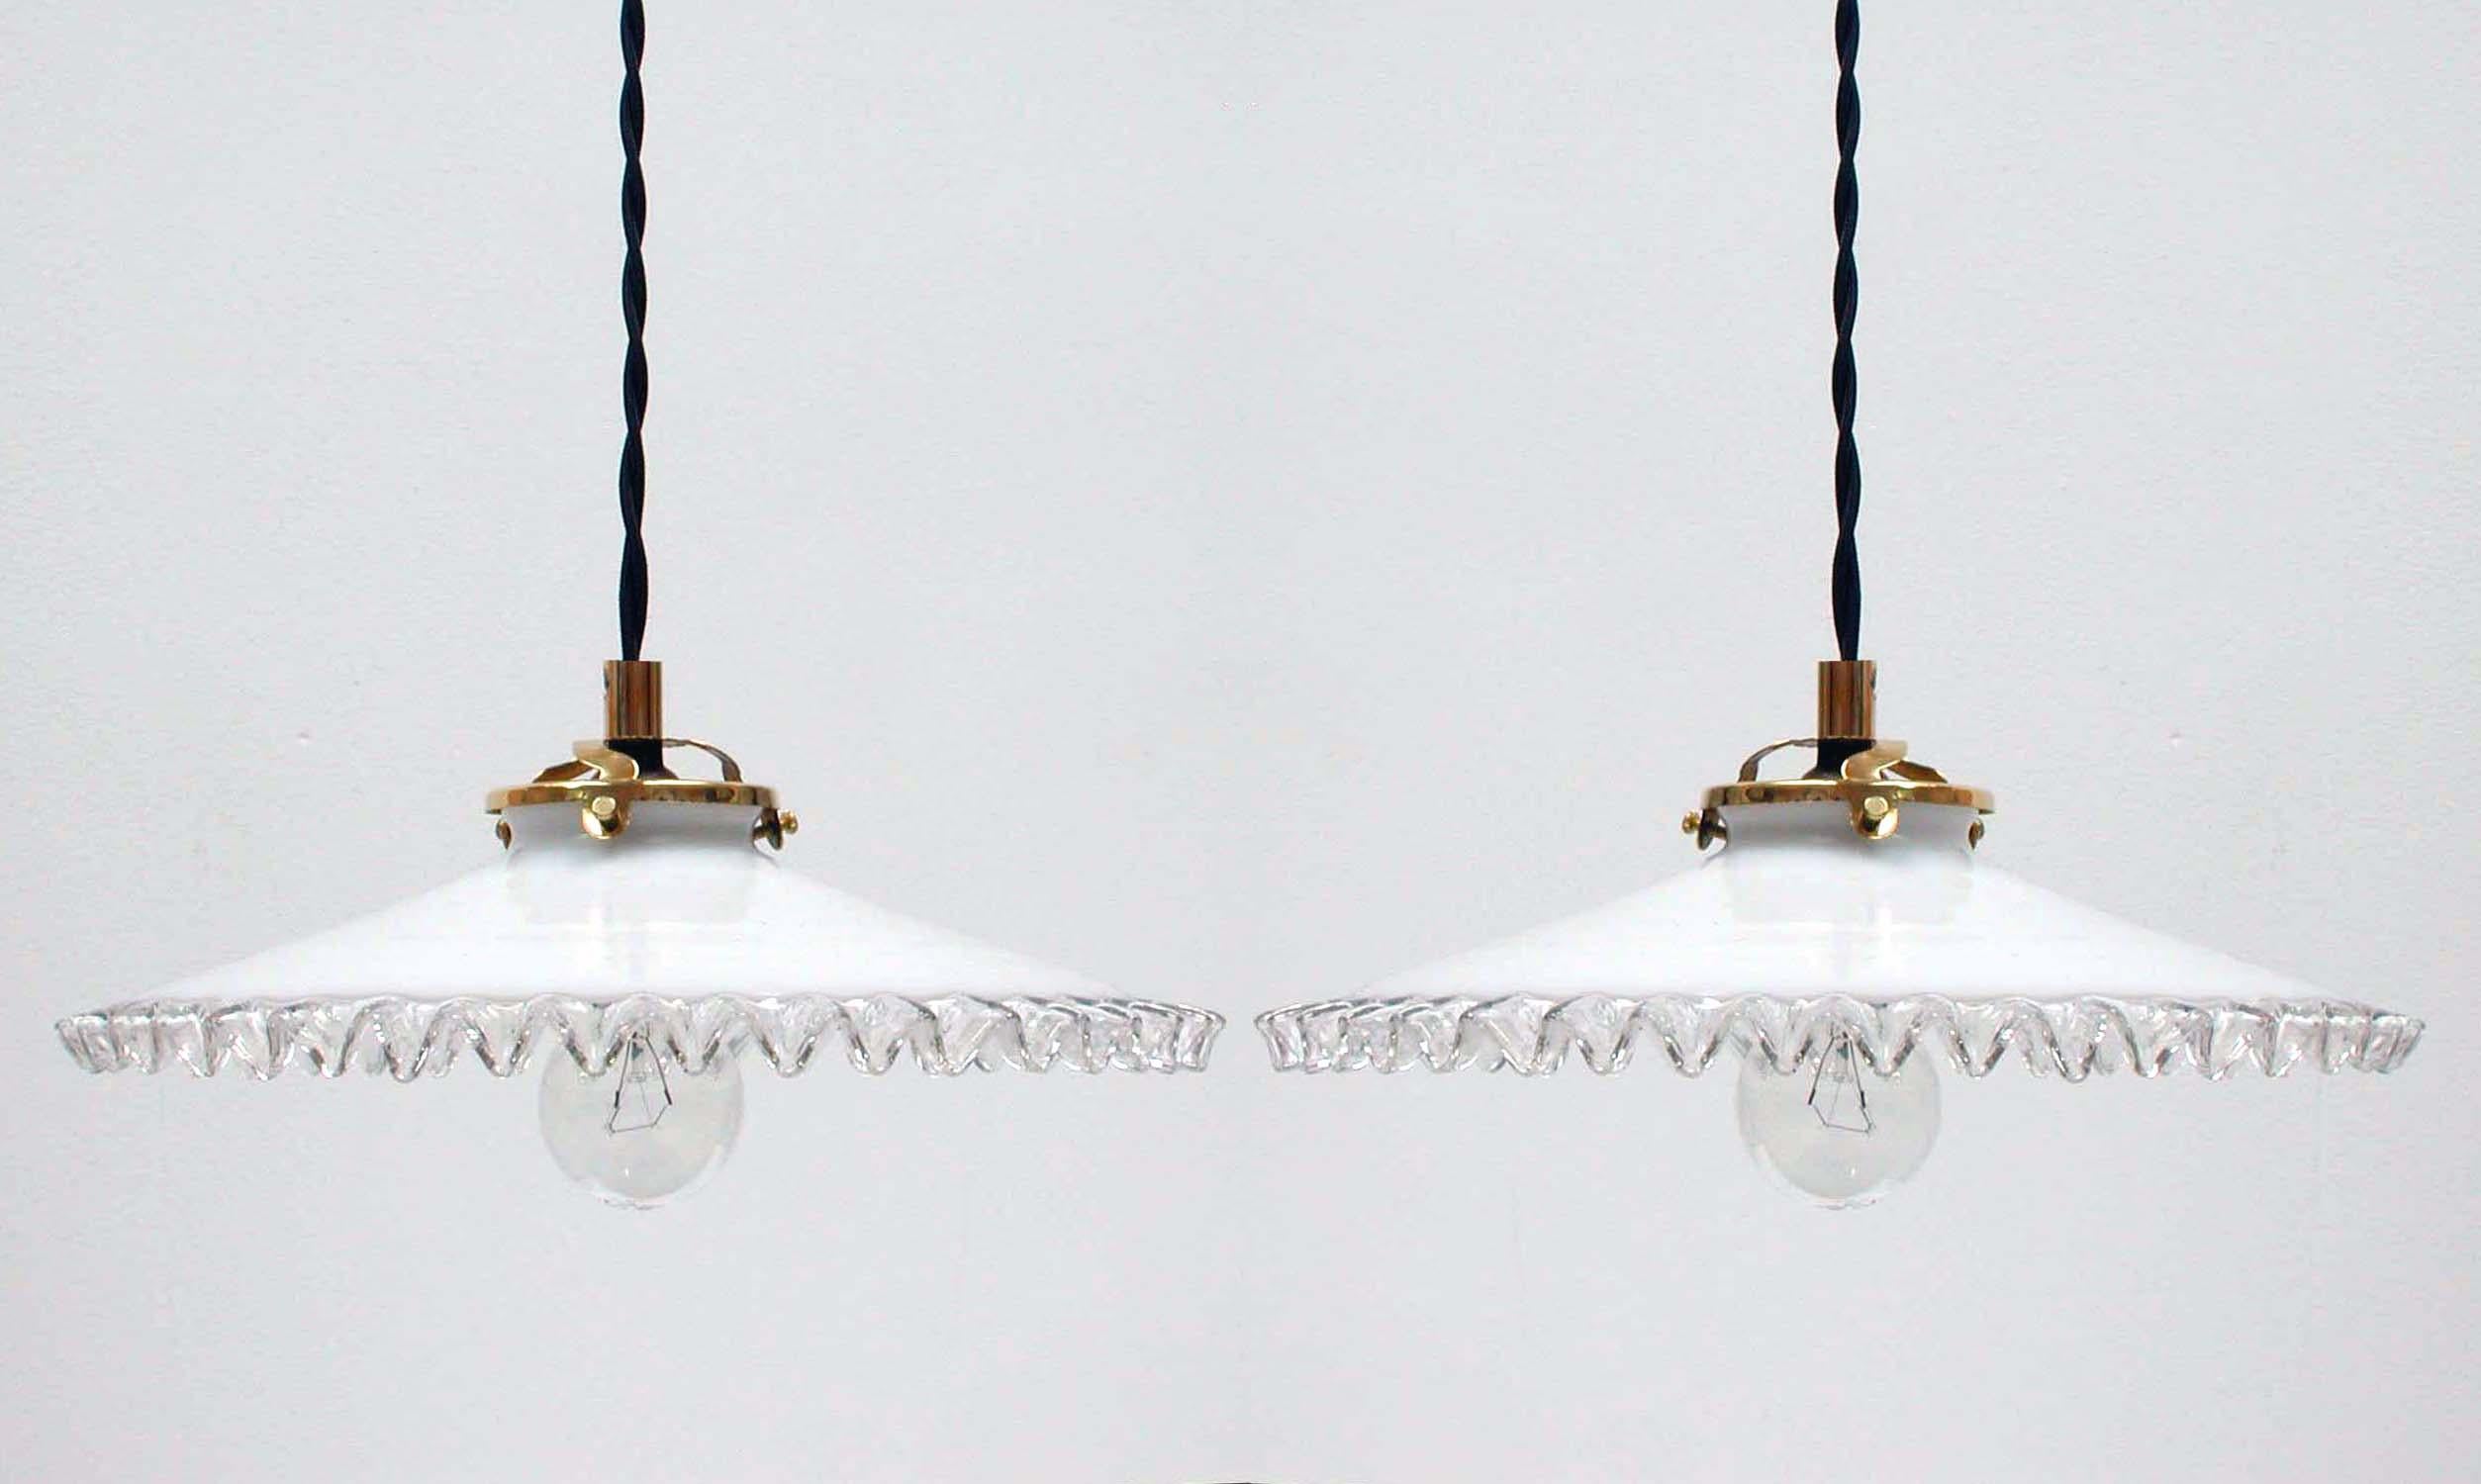 Diese Pendelleuchten wurden in den 1950er Jahren in Frankreich hergestellt. Die Lampen haben Lampenschirme aus weißem Opalglas mit Falten und Fassungen aus Messing. Sie verfügen über französische B22-Steckdosen und wurden mit neuen Stoffkabeln neu